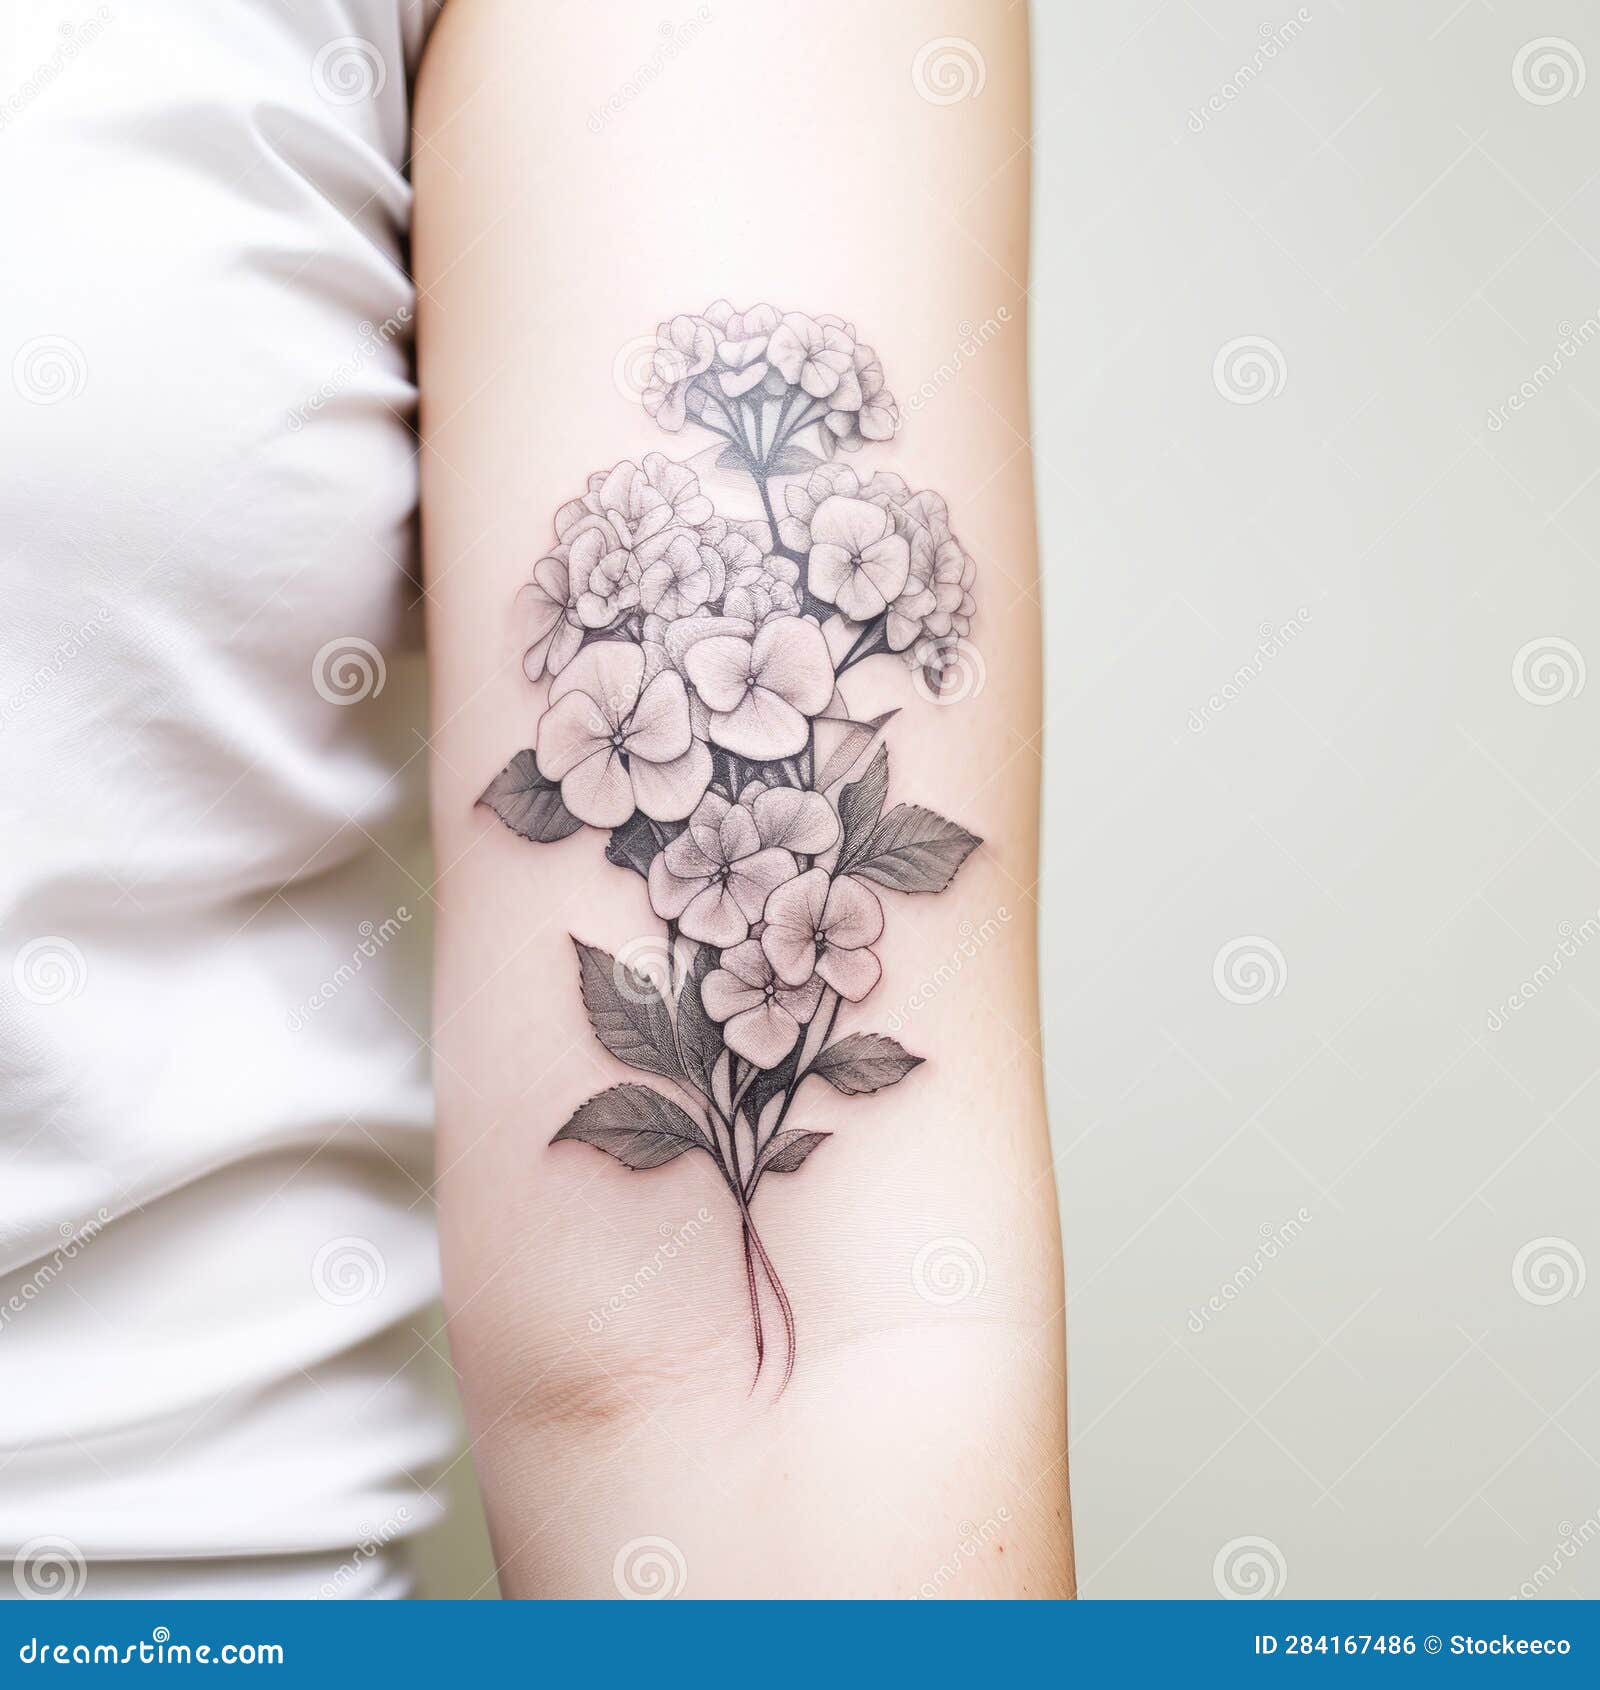 Realistic Lilac Tattoo | Best sleeve tattoos, Tattoos, Tattoos for women